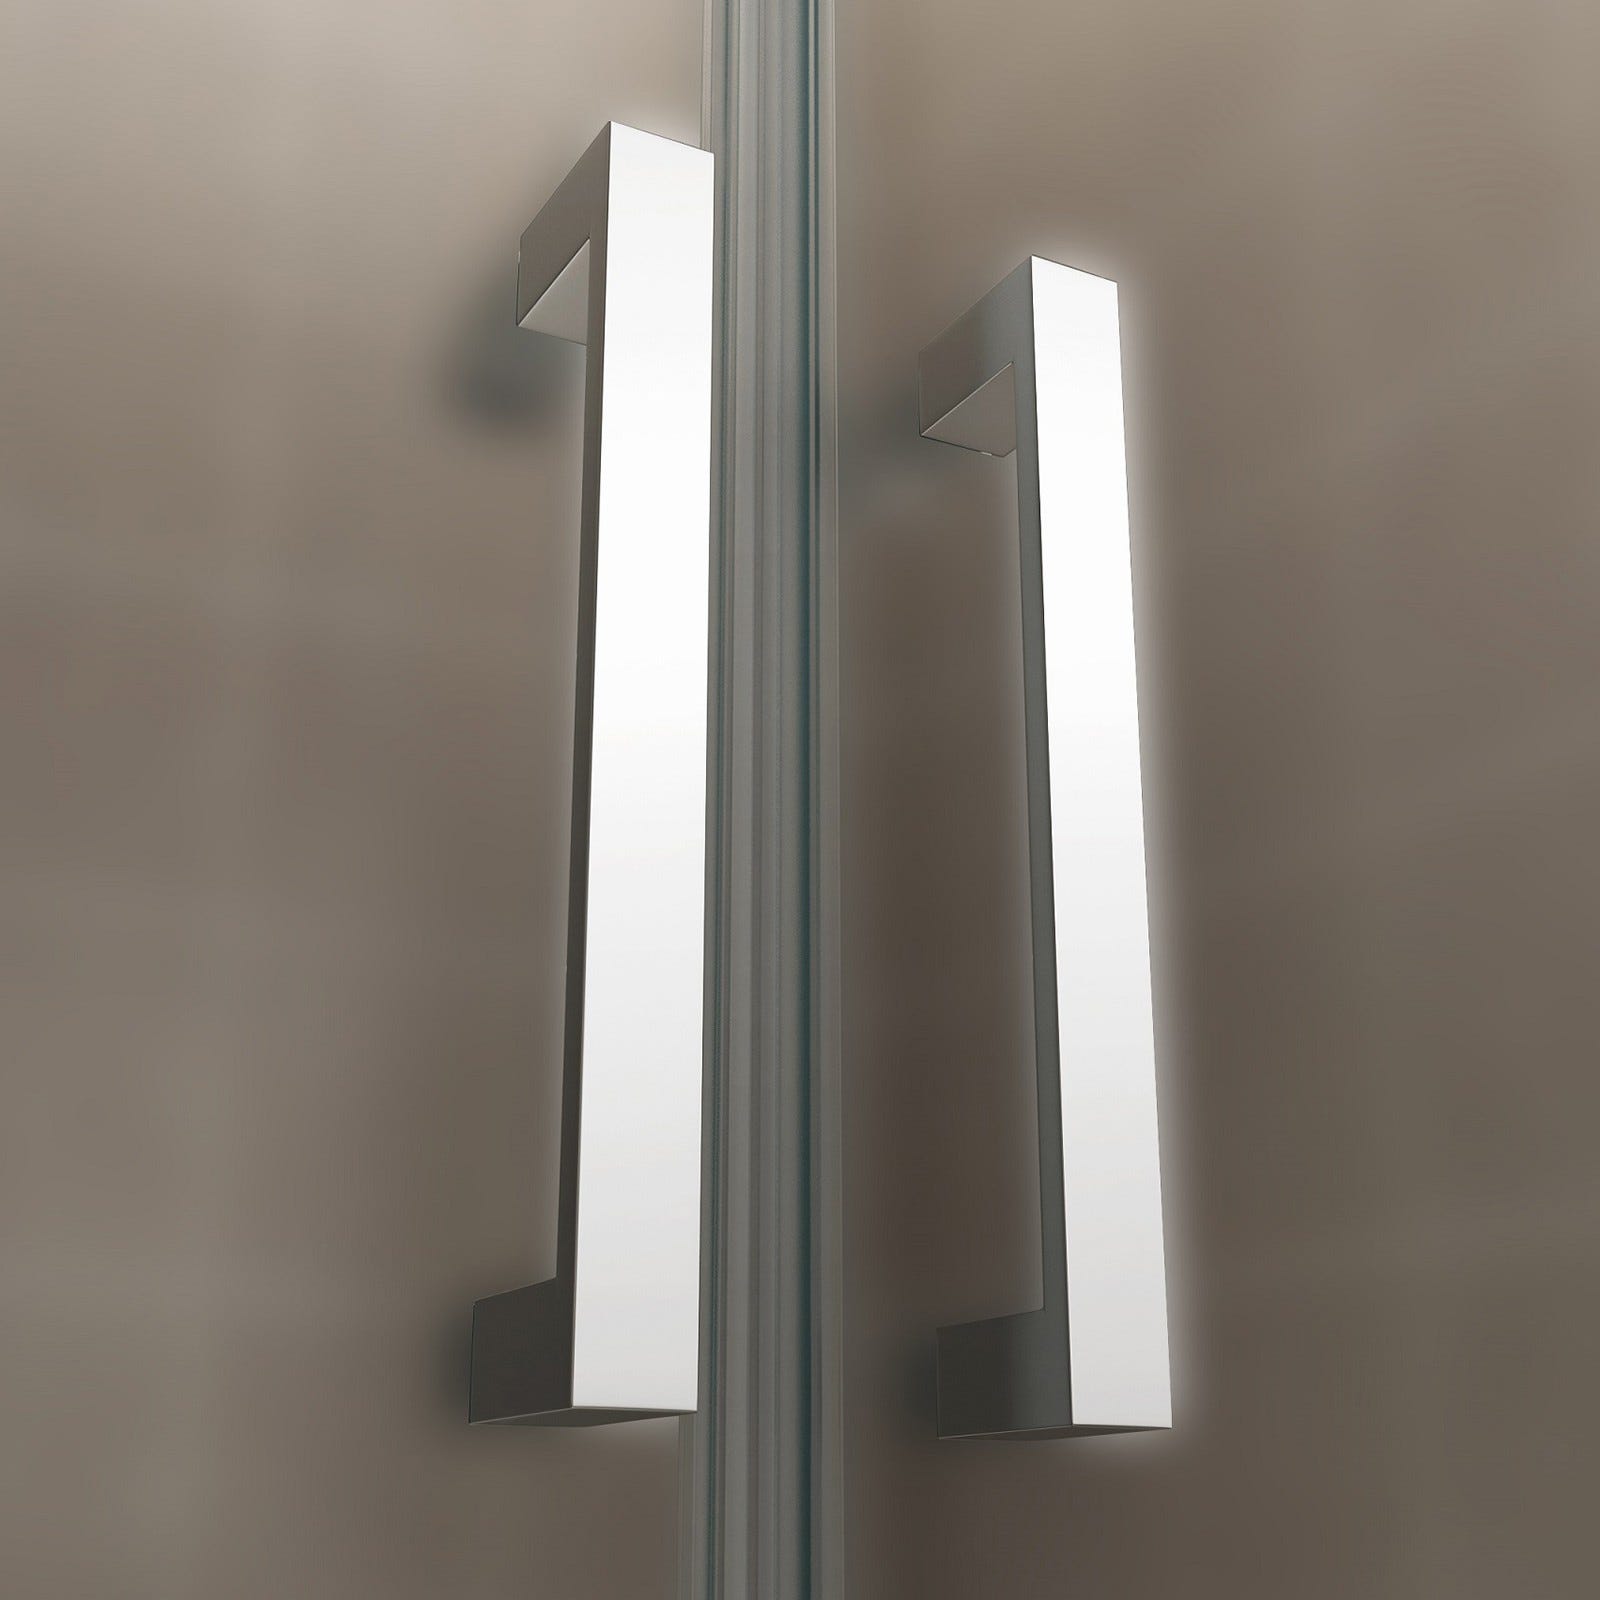 KAYA Porte de douche H 180 largeur réglable 89 à 92 cm verre opaque 4